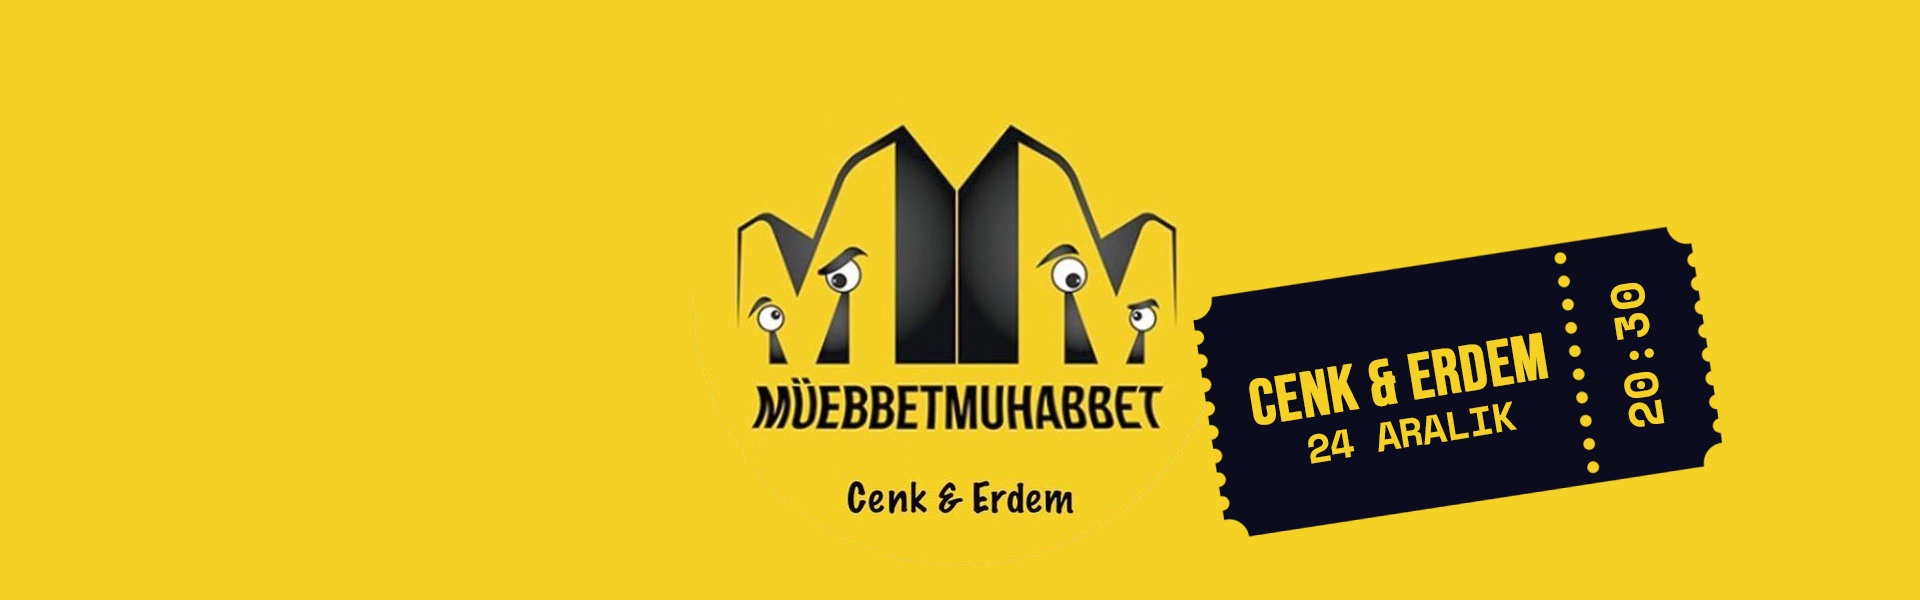 Müebbet Muhabbet, Cenk Erdem - 24 Aralık 20.30